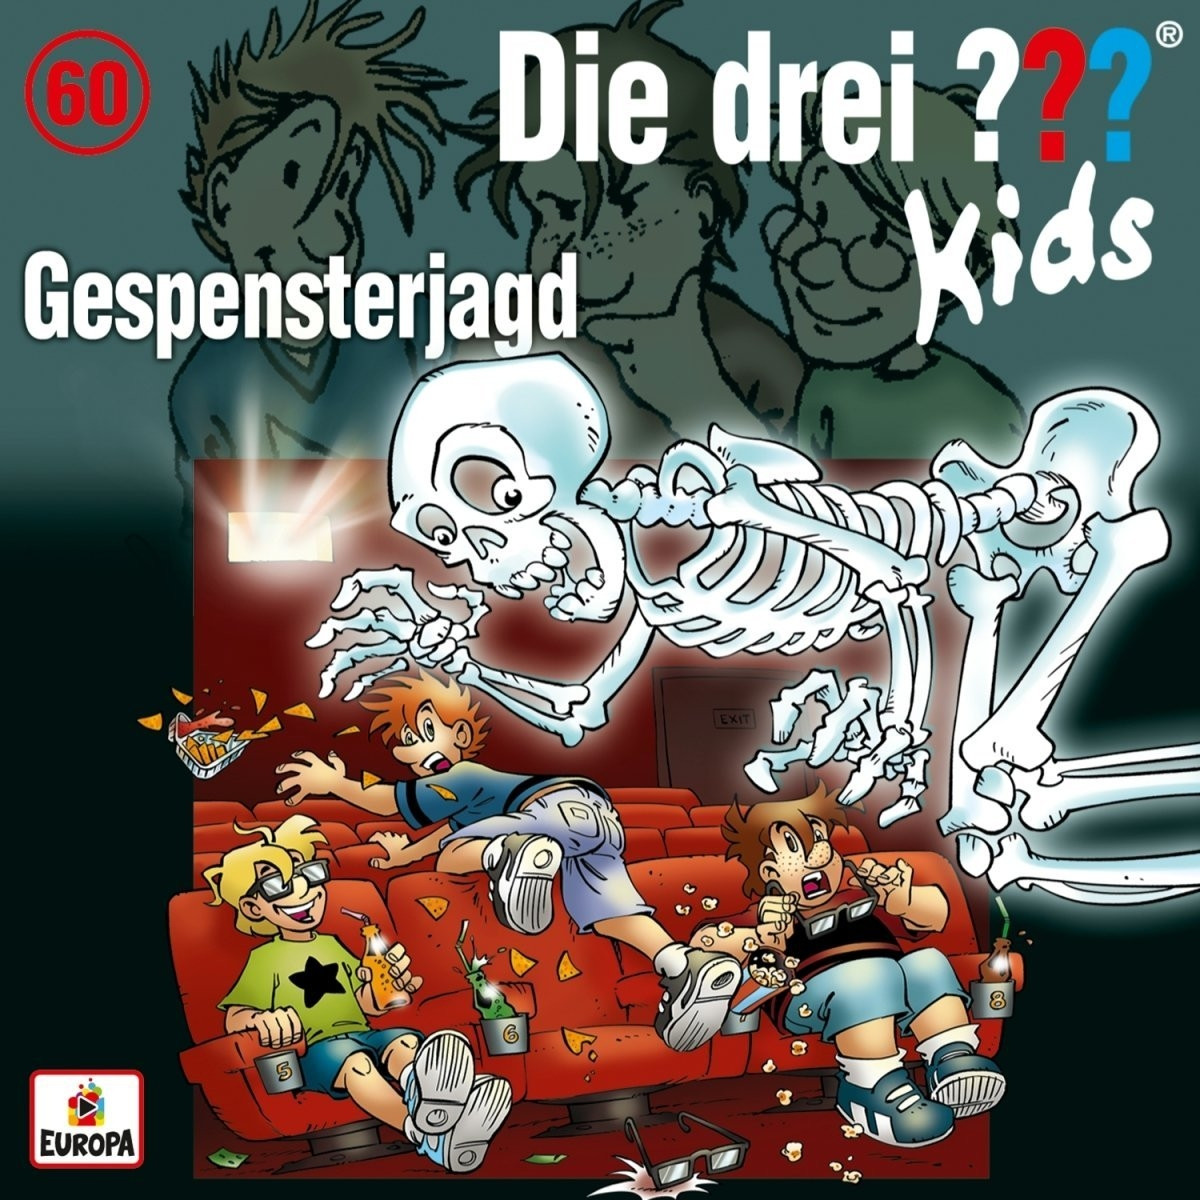 Die drei ??? Kids - Folge 60: Gespensterjagd | pop.de